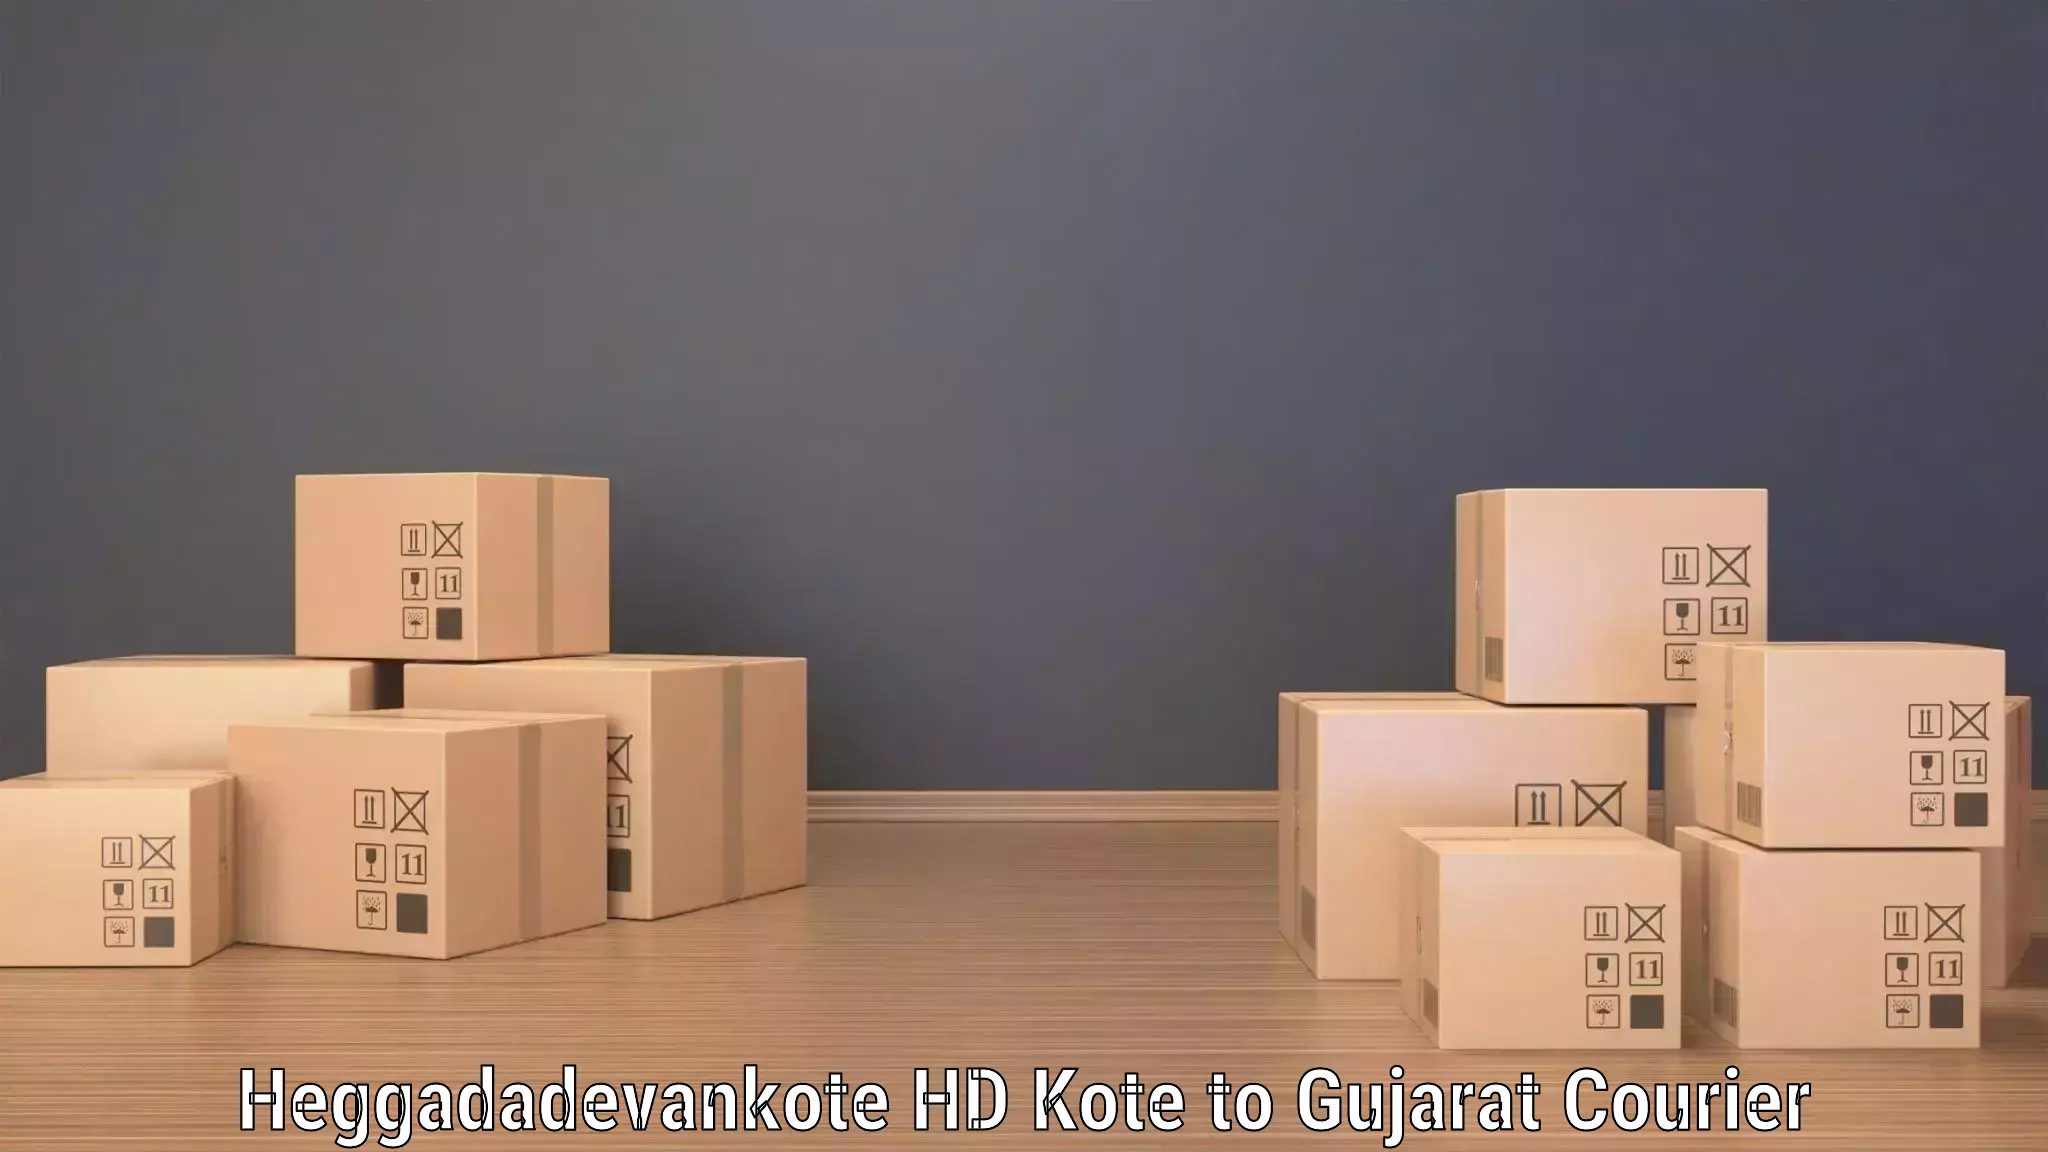 Express package transport Heggadadevankote HD Kote to Gujarat